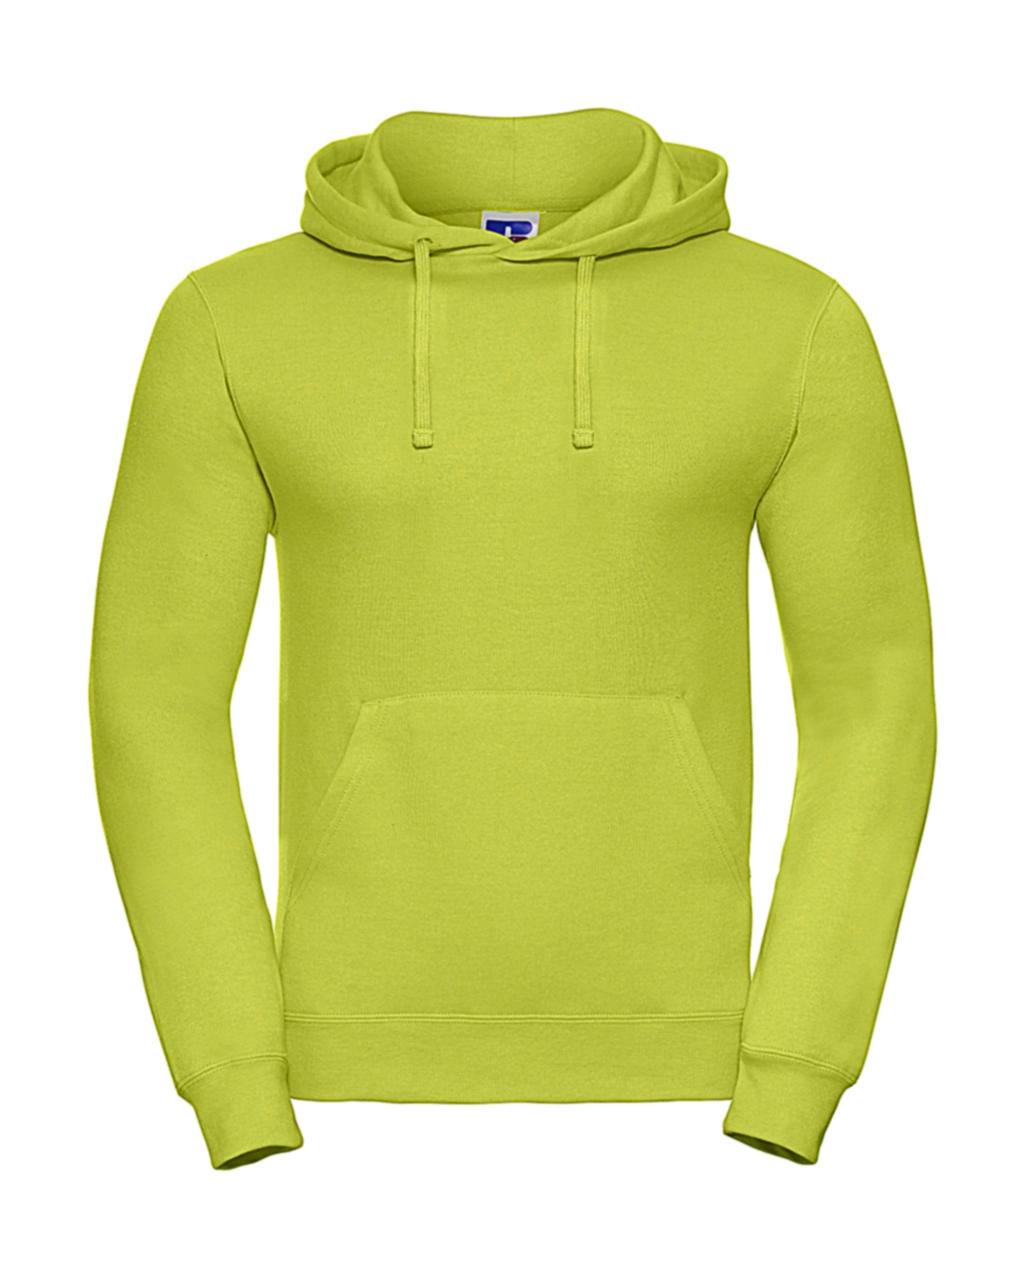 Hooded Sweatshirt zum Besticken und Bedrucken in der Farbe Lime mit Ihren Logo, Schriftzug oder Motiv.